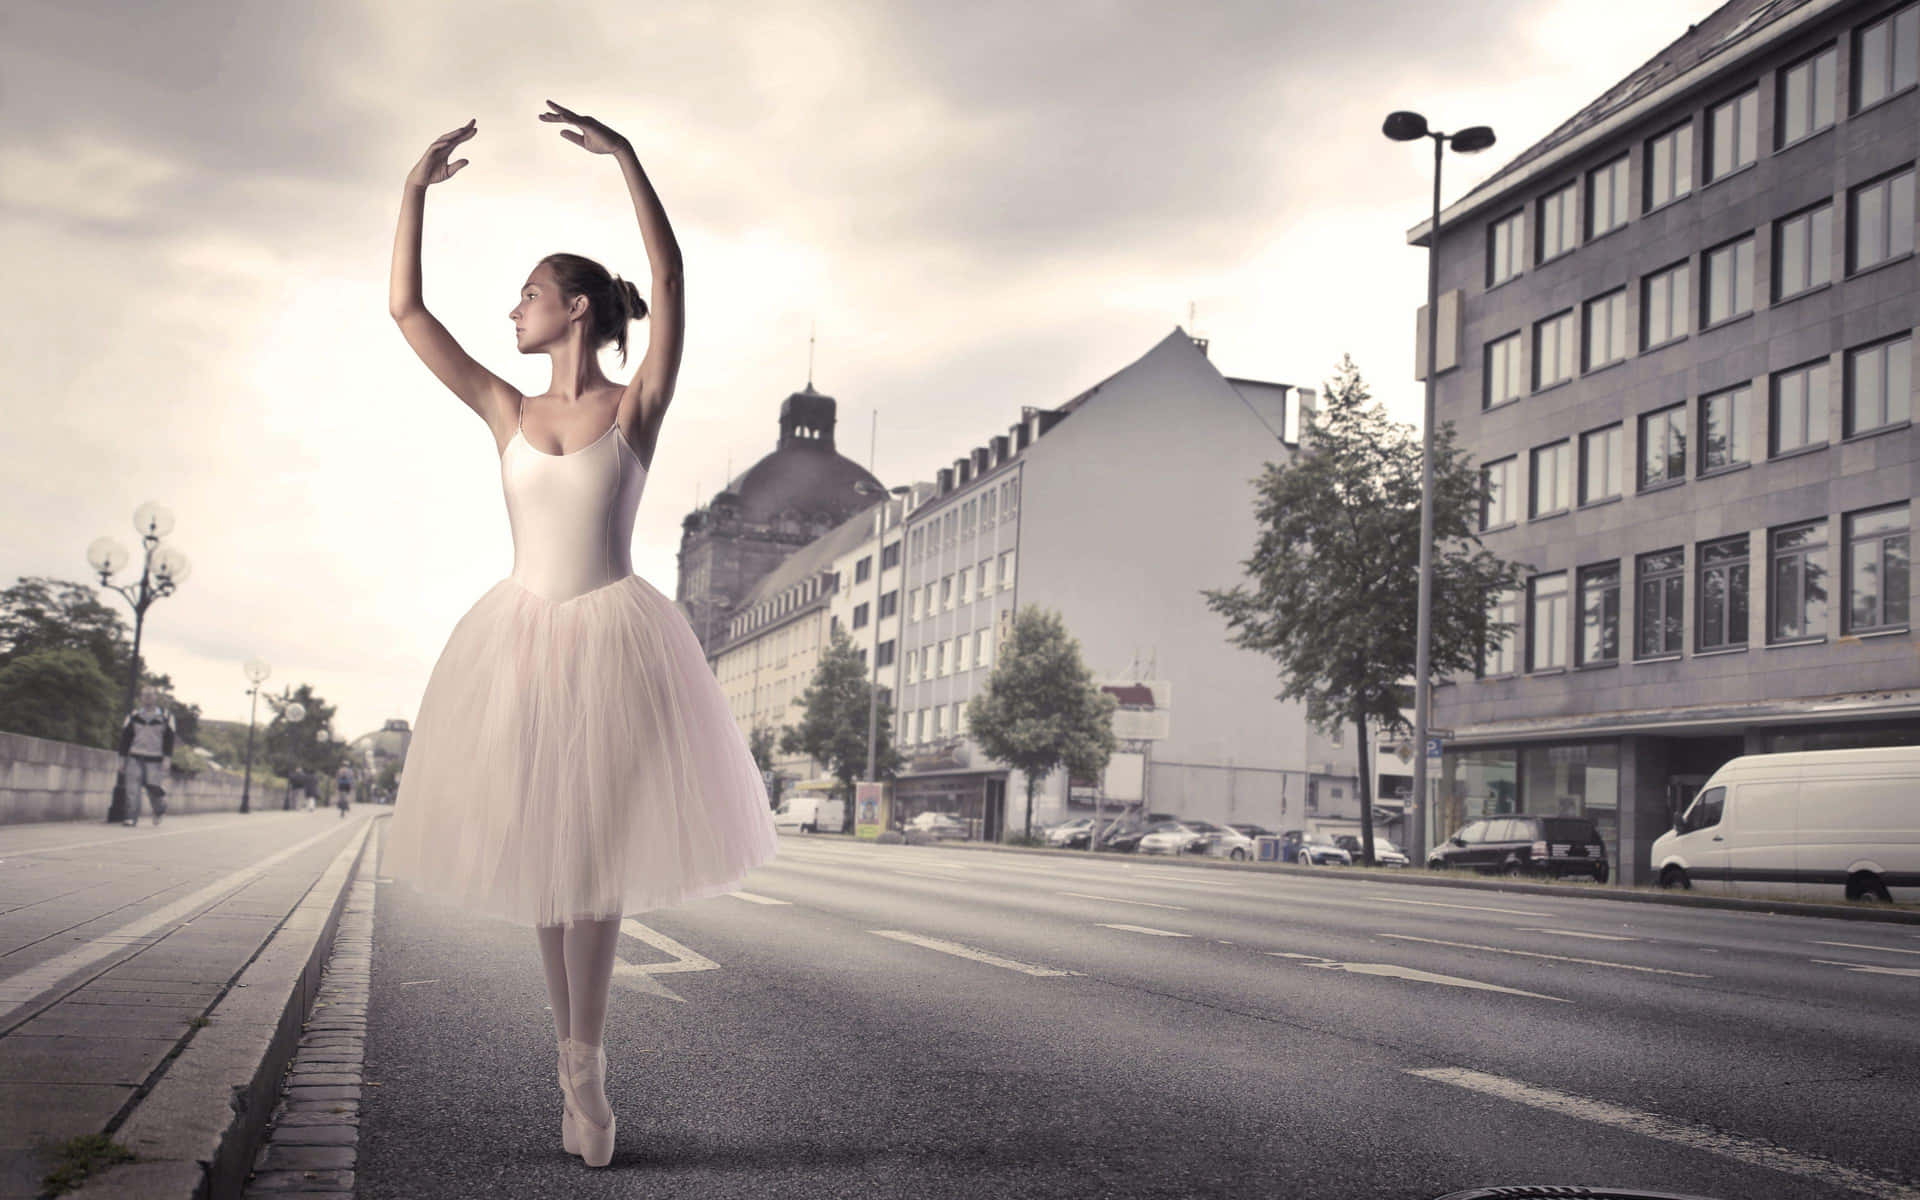 Einejunge Ballerina Vollendet Anmutig Ihre Pirouette.